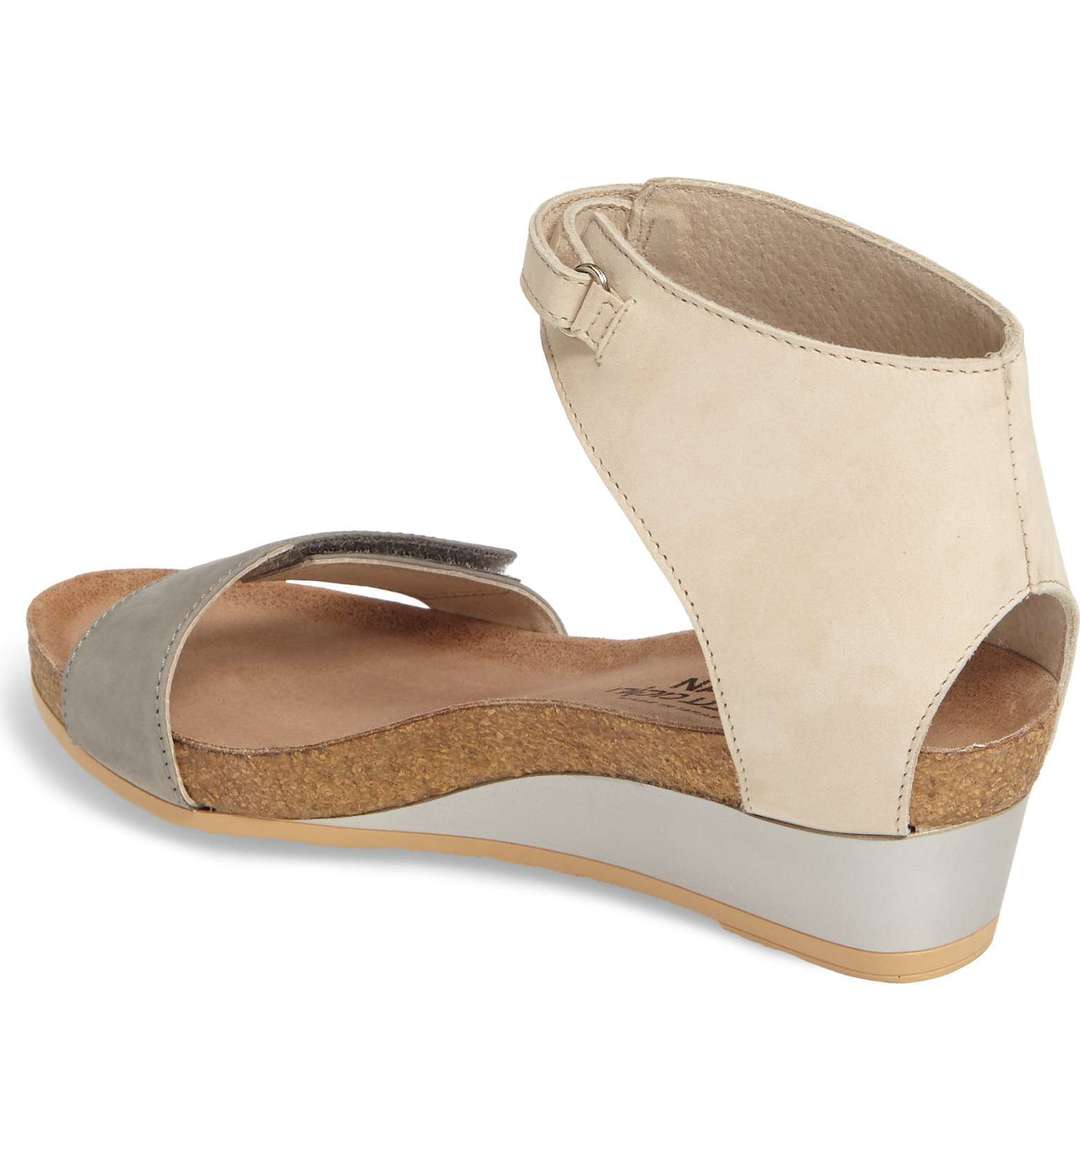 Women's Prophecy Light Gray/Beige Sandal - Orleans Shoe Co.